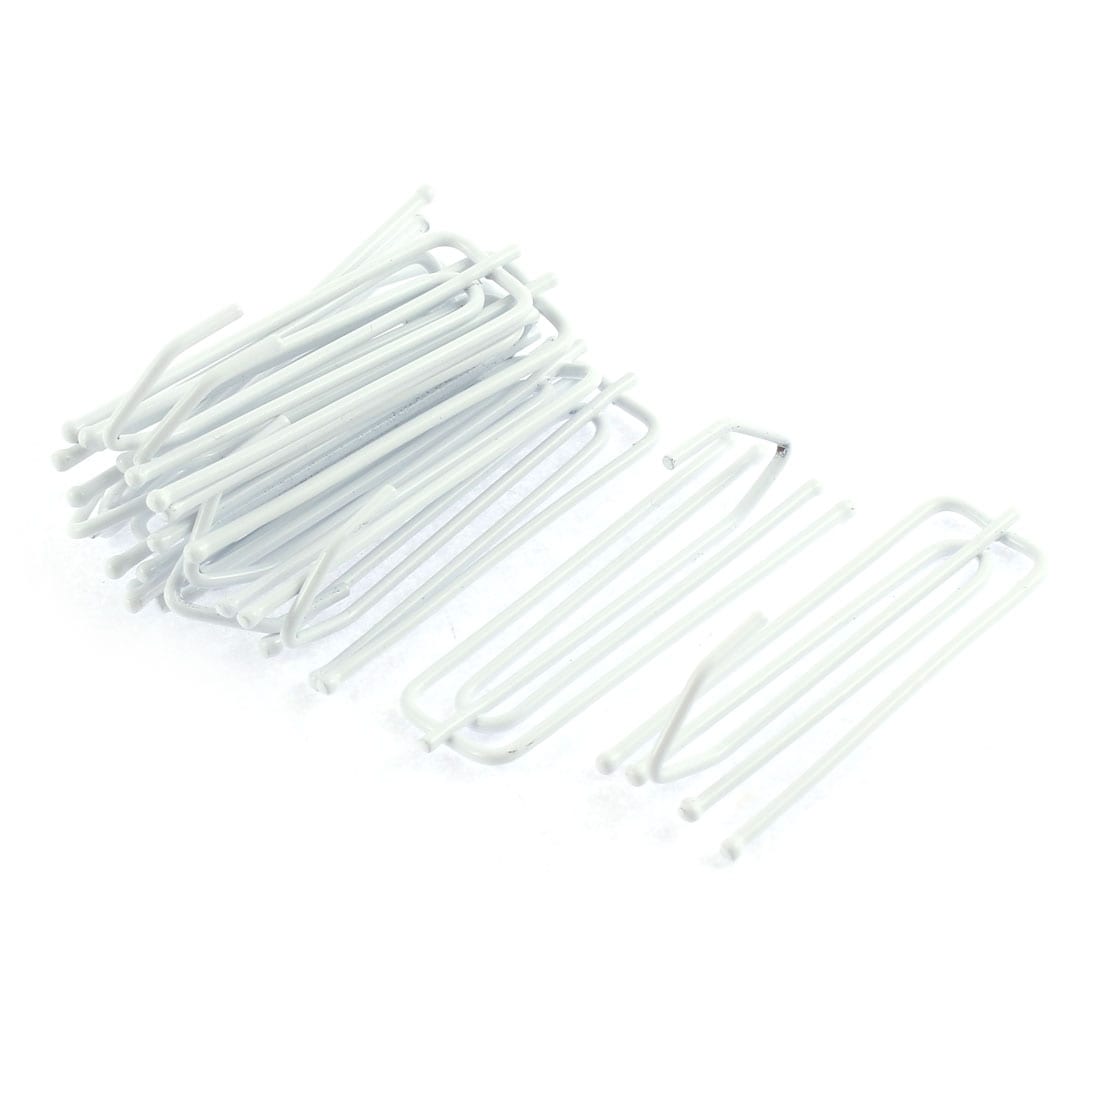 Unique Bargains White Metal 4 Prongs Pinch Pleat Drapes Curtain